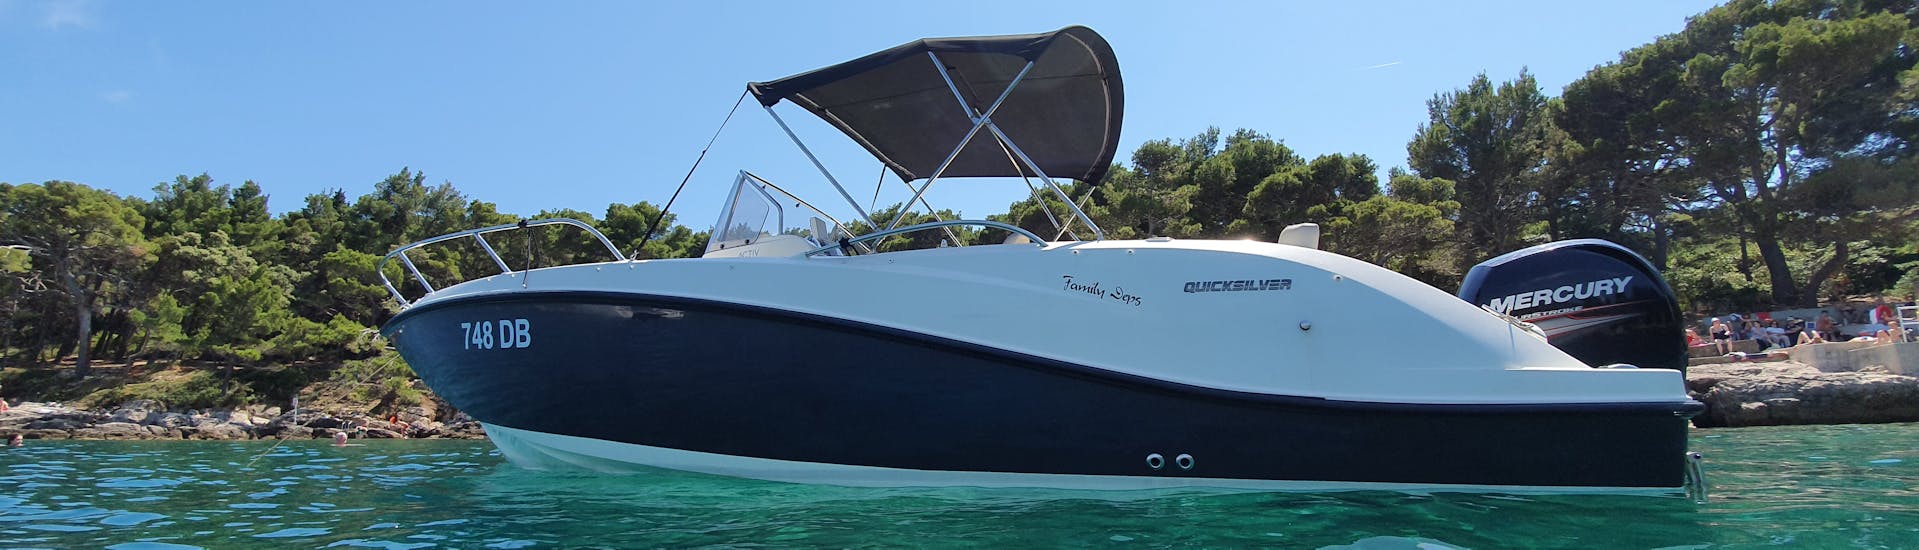 La nostra barca è in acqua e pronta per voi durante il viaggio in barca privata (6 pax) alle isole Elafiti con snorkeling con Explore Dubrovnik by Boat.